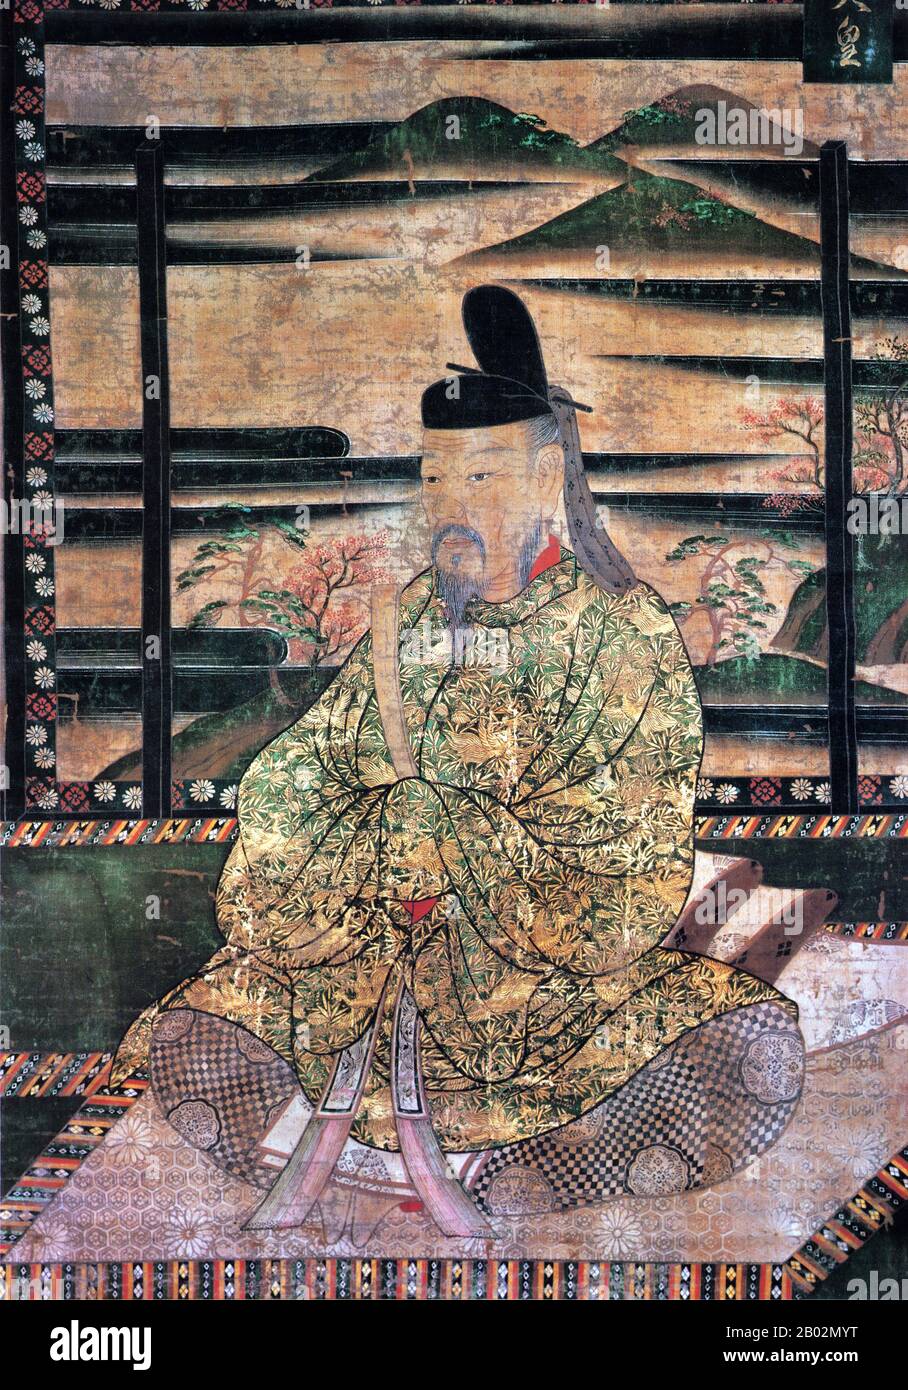 Kaiser Saga (嵯峨天皇 Saga-tennō, 8. Februar 785 - 24. August 842) war gemäß der traditionellen Thronfolge 52. Kaiser von Japan. Die Herrschaft der Saga umfasste die Jahre von 809 bis 823. Saga war der zweite Sohn von Kaiser Kanmu und Fujiwara no Otomuro. Sein persönlicher Name war Kamino (神野). Saga war ein versierter Kalligraph, der in der Lage war, auf Chinesisch zu komponieren, der die ersten Wettbewerbe der kaiserlichen Poesie (naien) ausführte. Der Legende nach war er der erste japanische Kaiser, der Tee trinkte. Saga wird traditionell an seinem Grab verehrt; die Kaiserliche Haushaltsbehörde bezeichnet Saganoyamanoe keine Mis Stockfoto